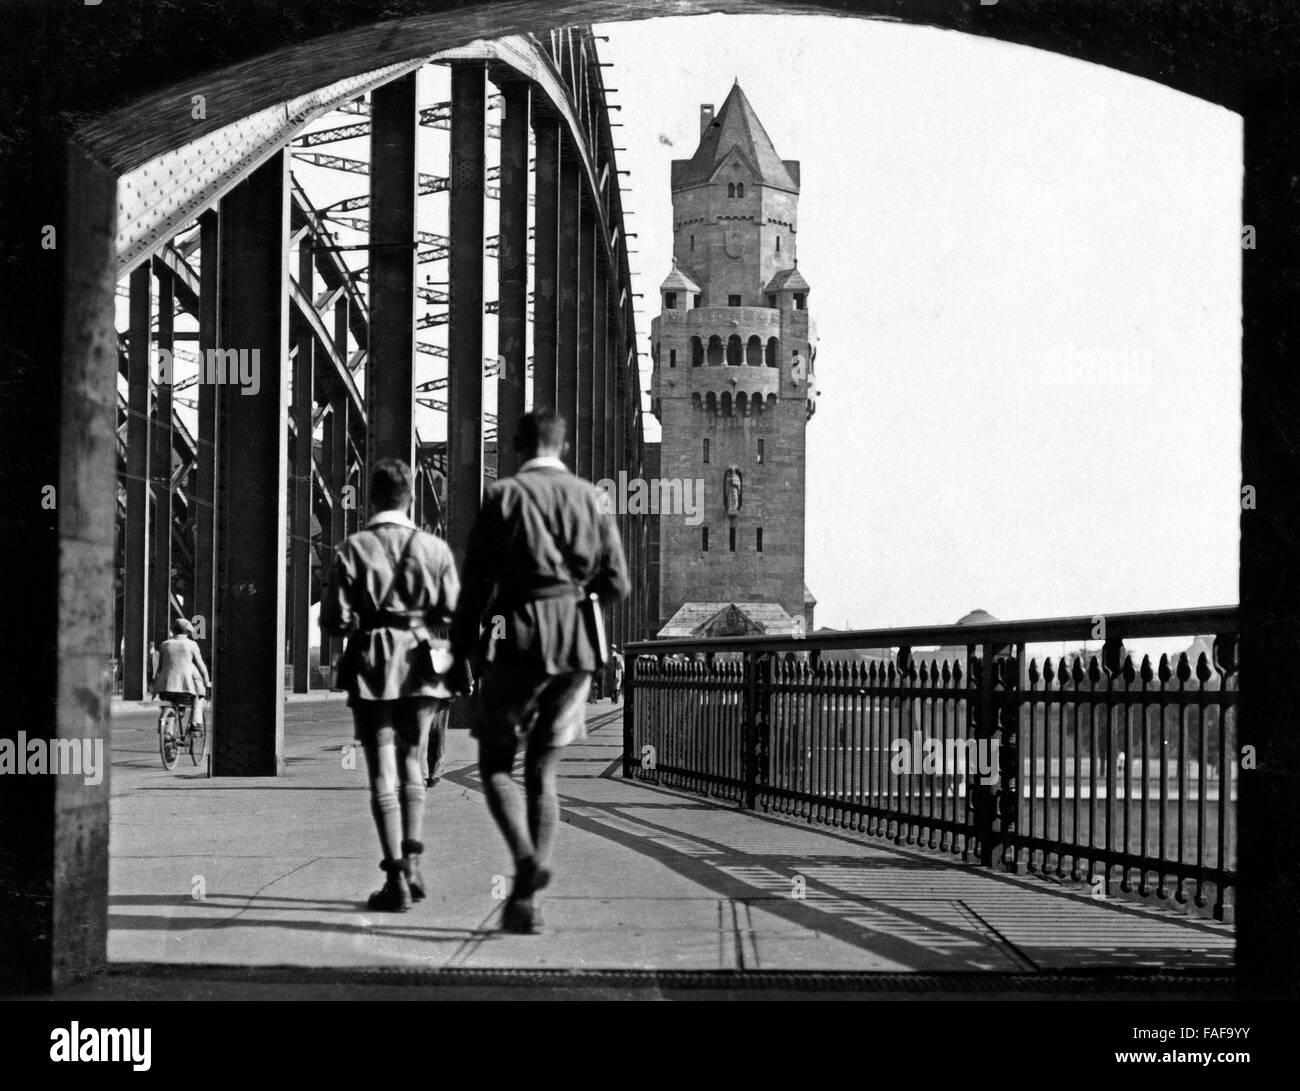 Zwei junge Männer auf dem Weg über die von Hohenzollernbrücke nach Köln Deutz, Deutschland 1920er Jahre. Deux jeunes hommes sur leur chemin plus Hohenzollernbruecke bridge de Deutz à Cologne, Allemagne 1920. Banque D'Images